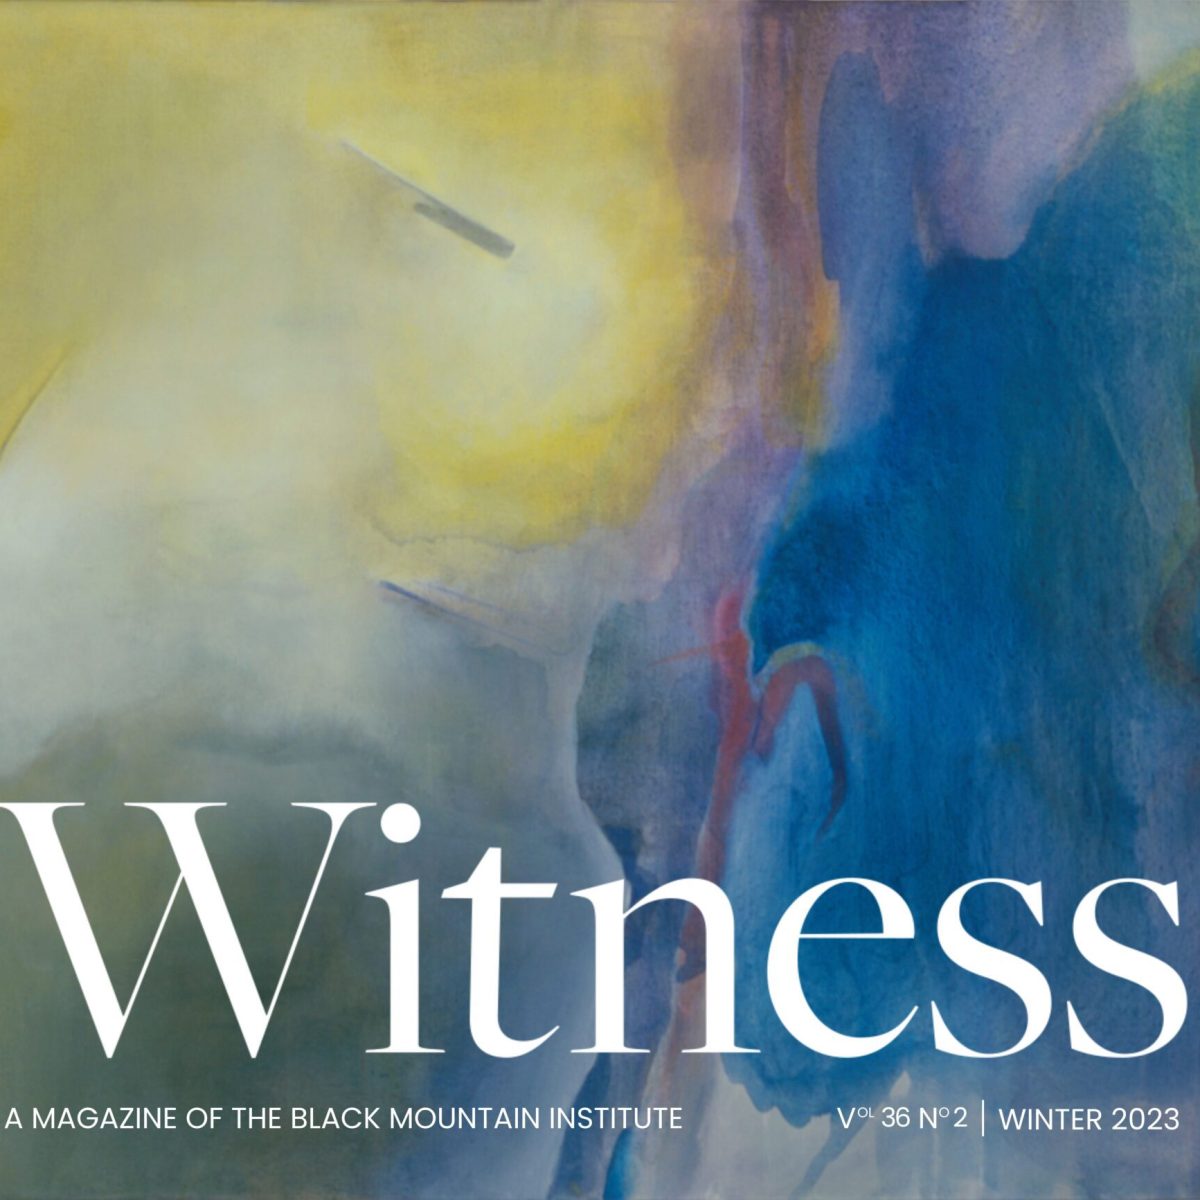 Witness Magazine, Vol. XXXVI No. 2